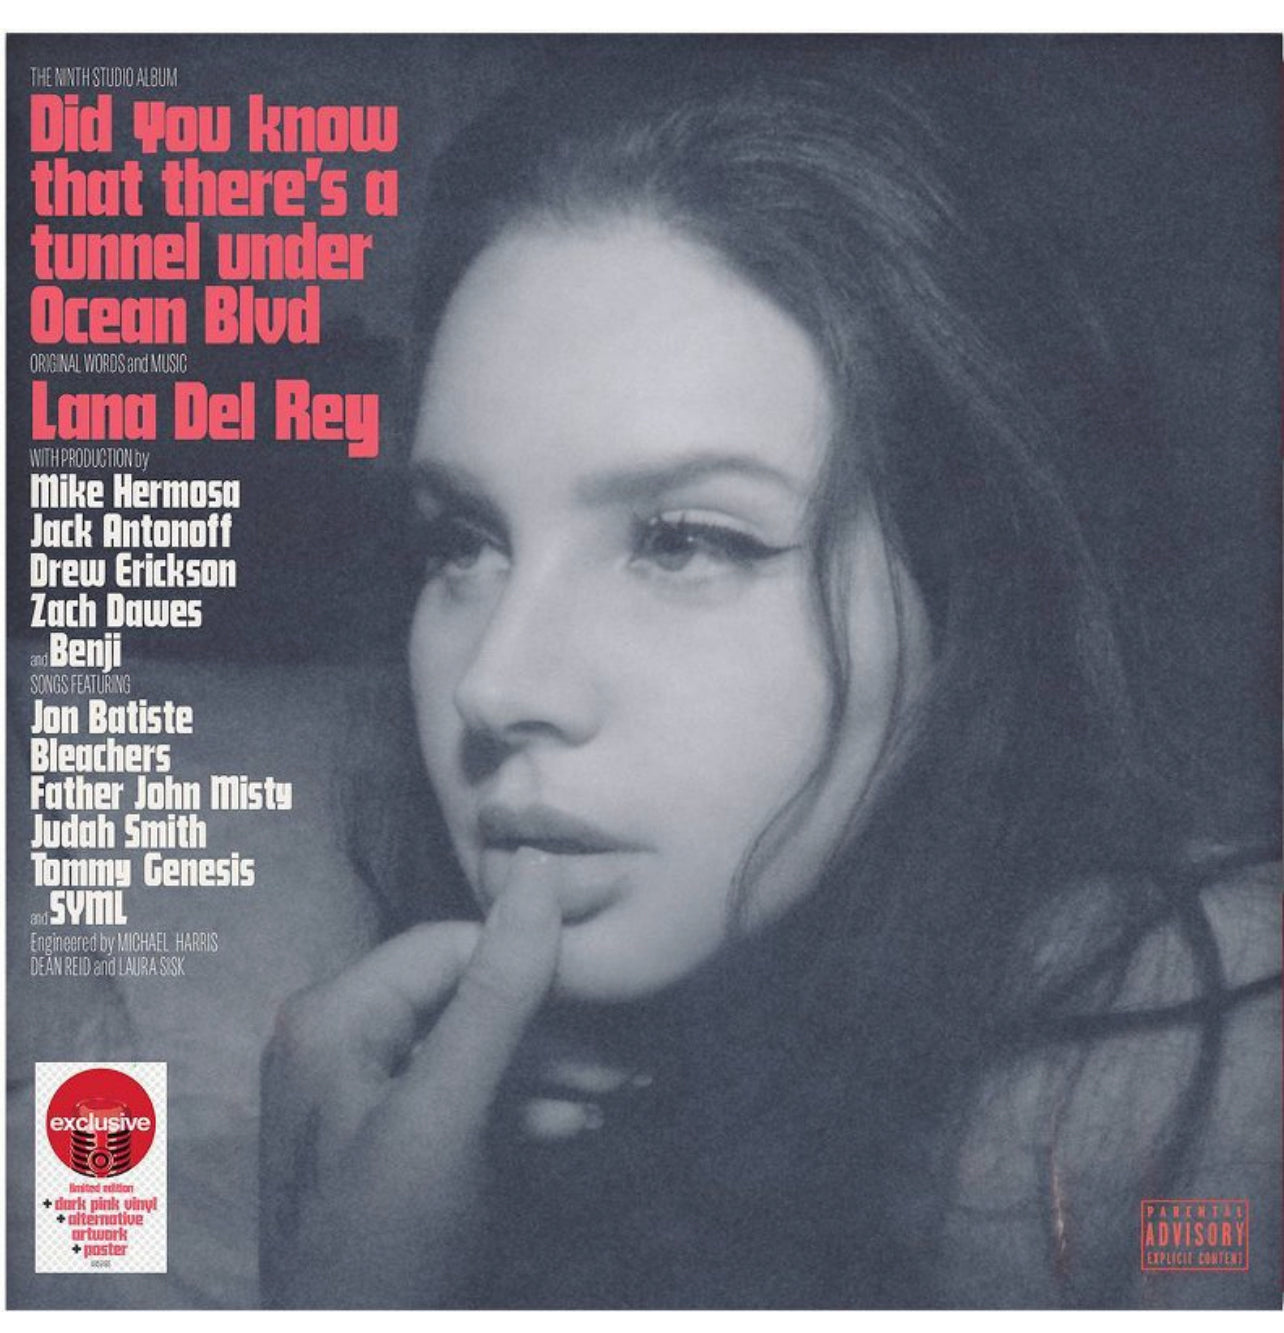 Vinyl Lana del Rey Ocean Blvd